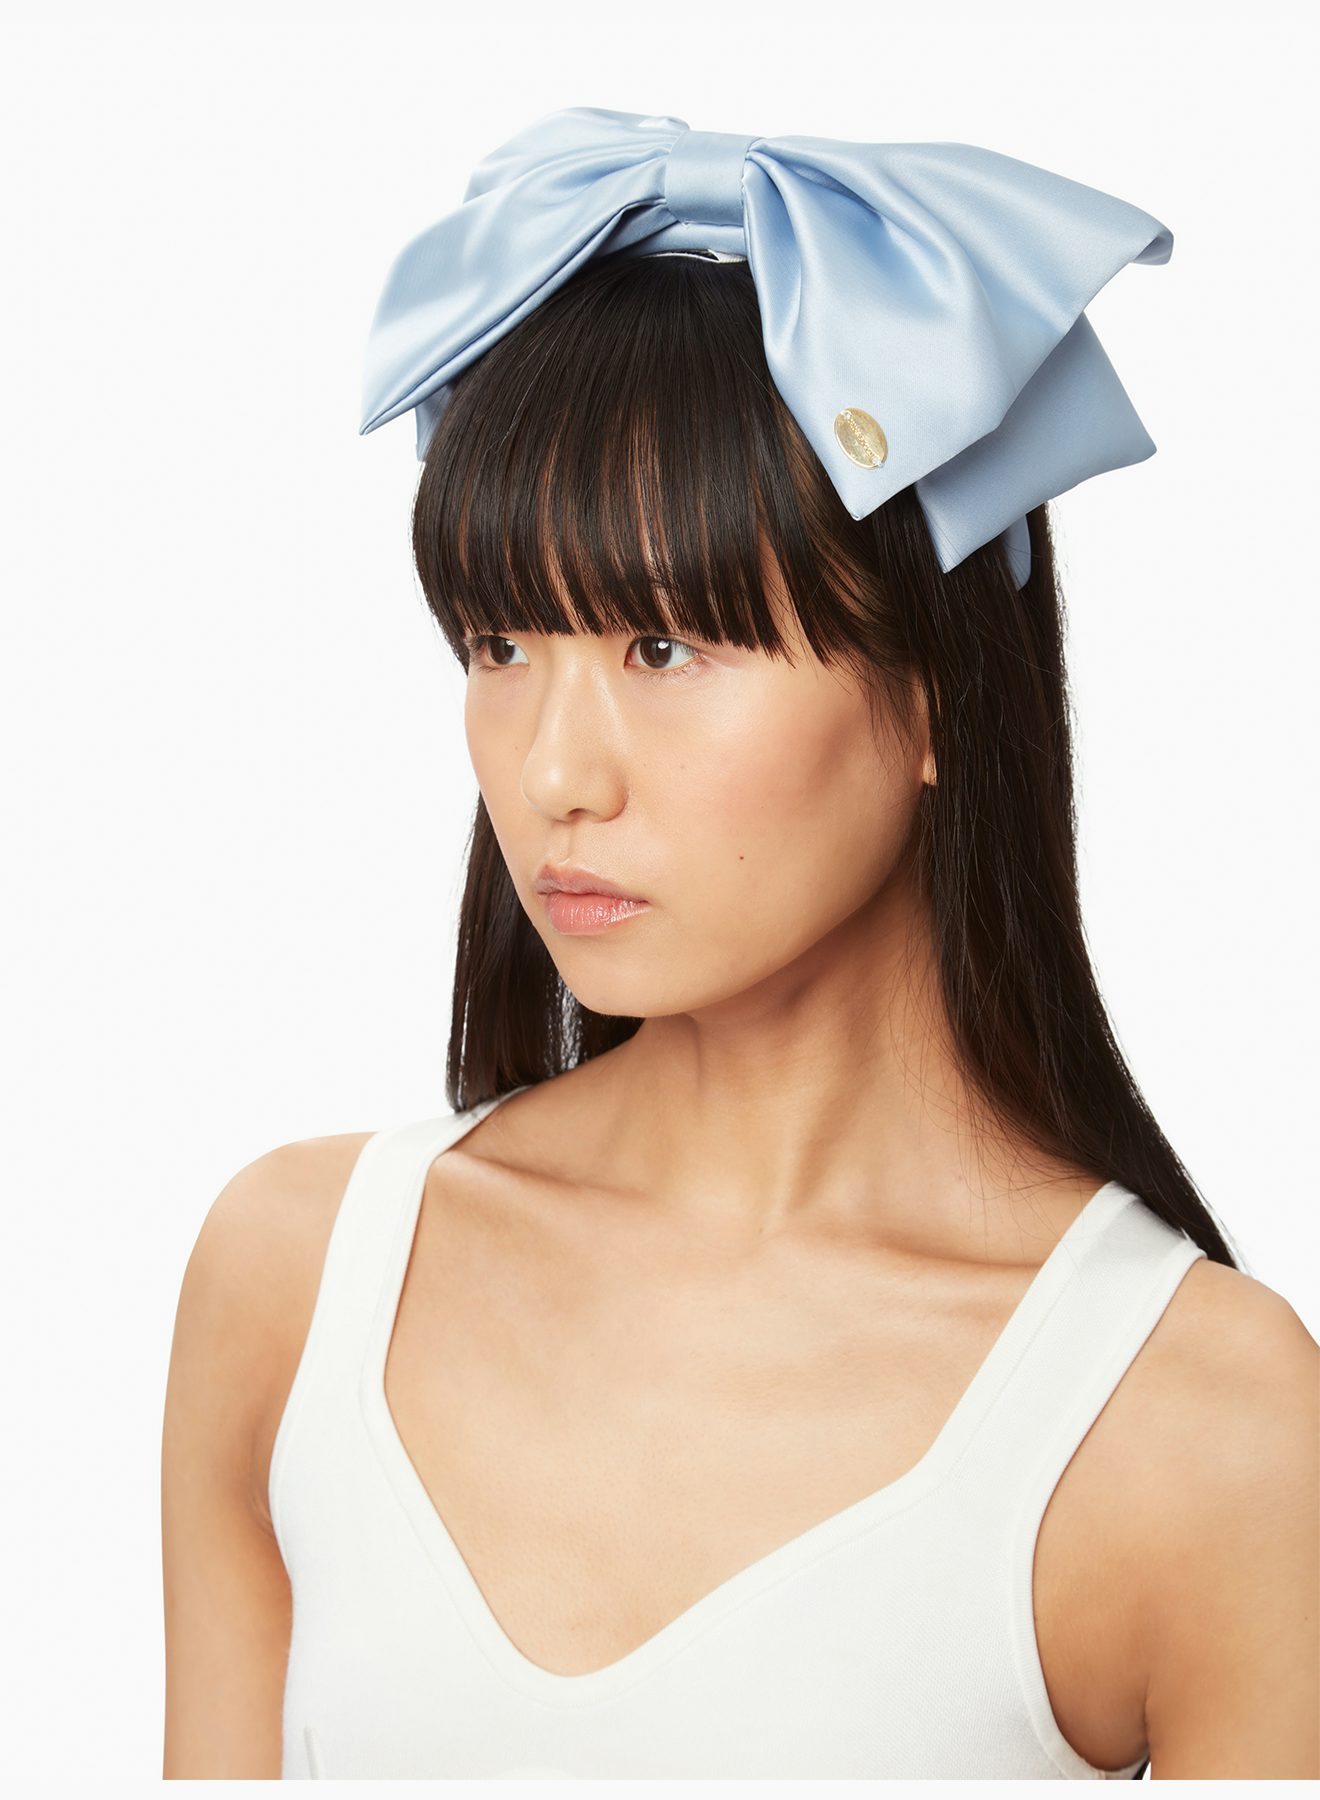 Satin headband with bow in blue - Nina Ricci